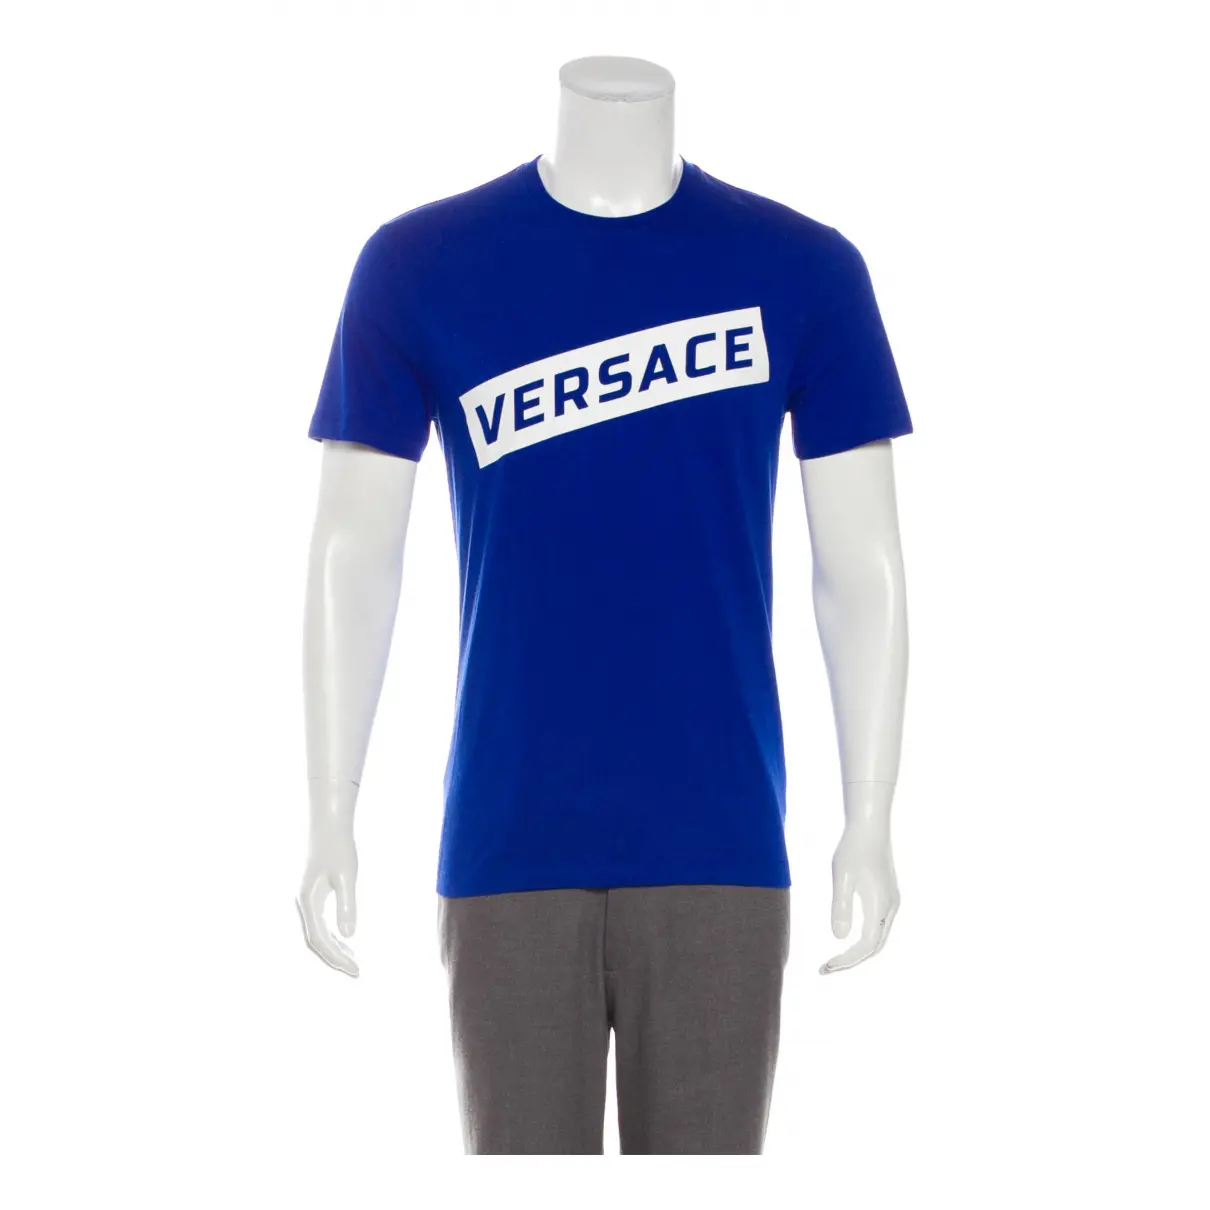 Buy Versace T-shirt online